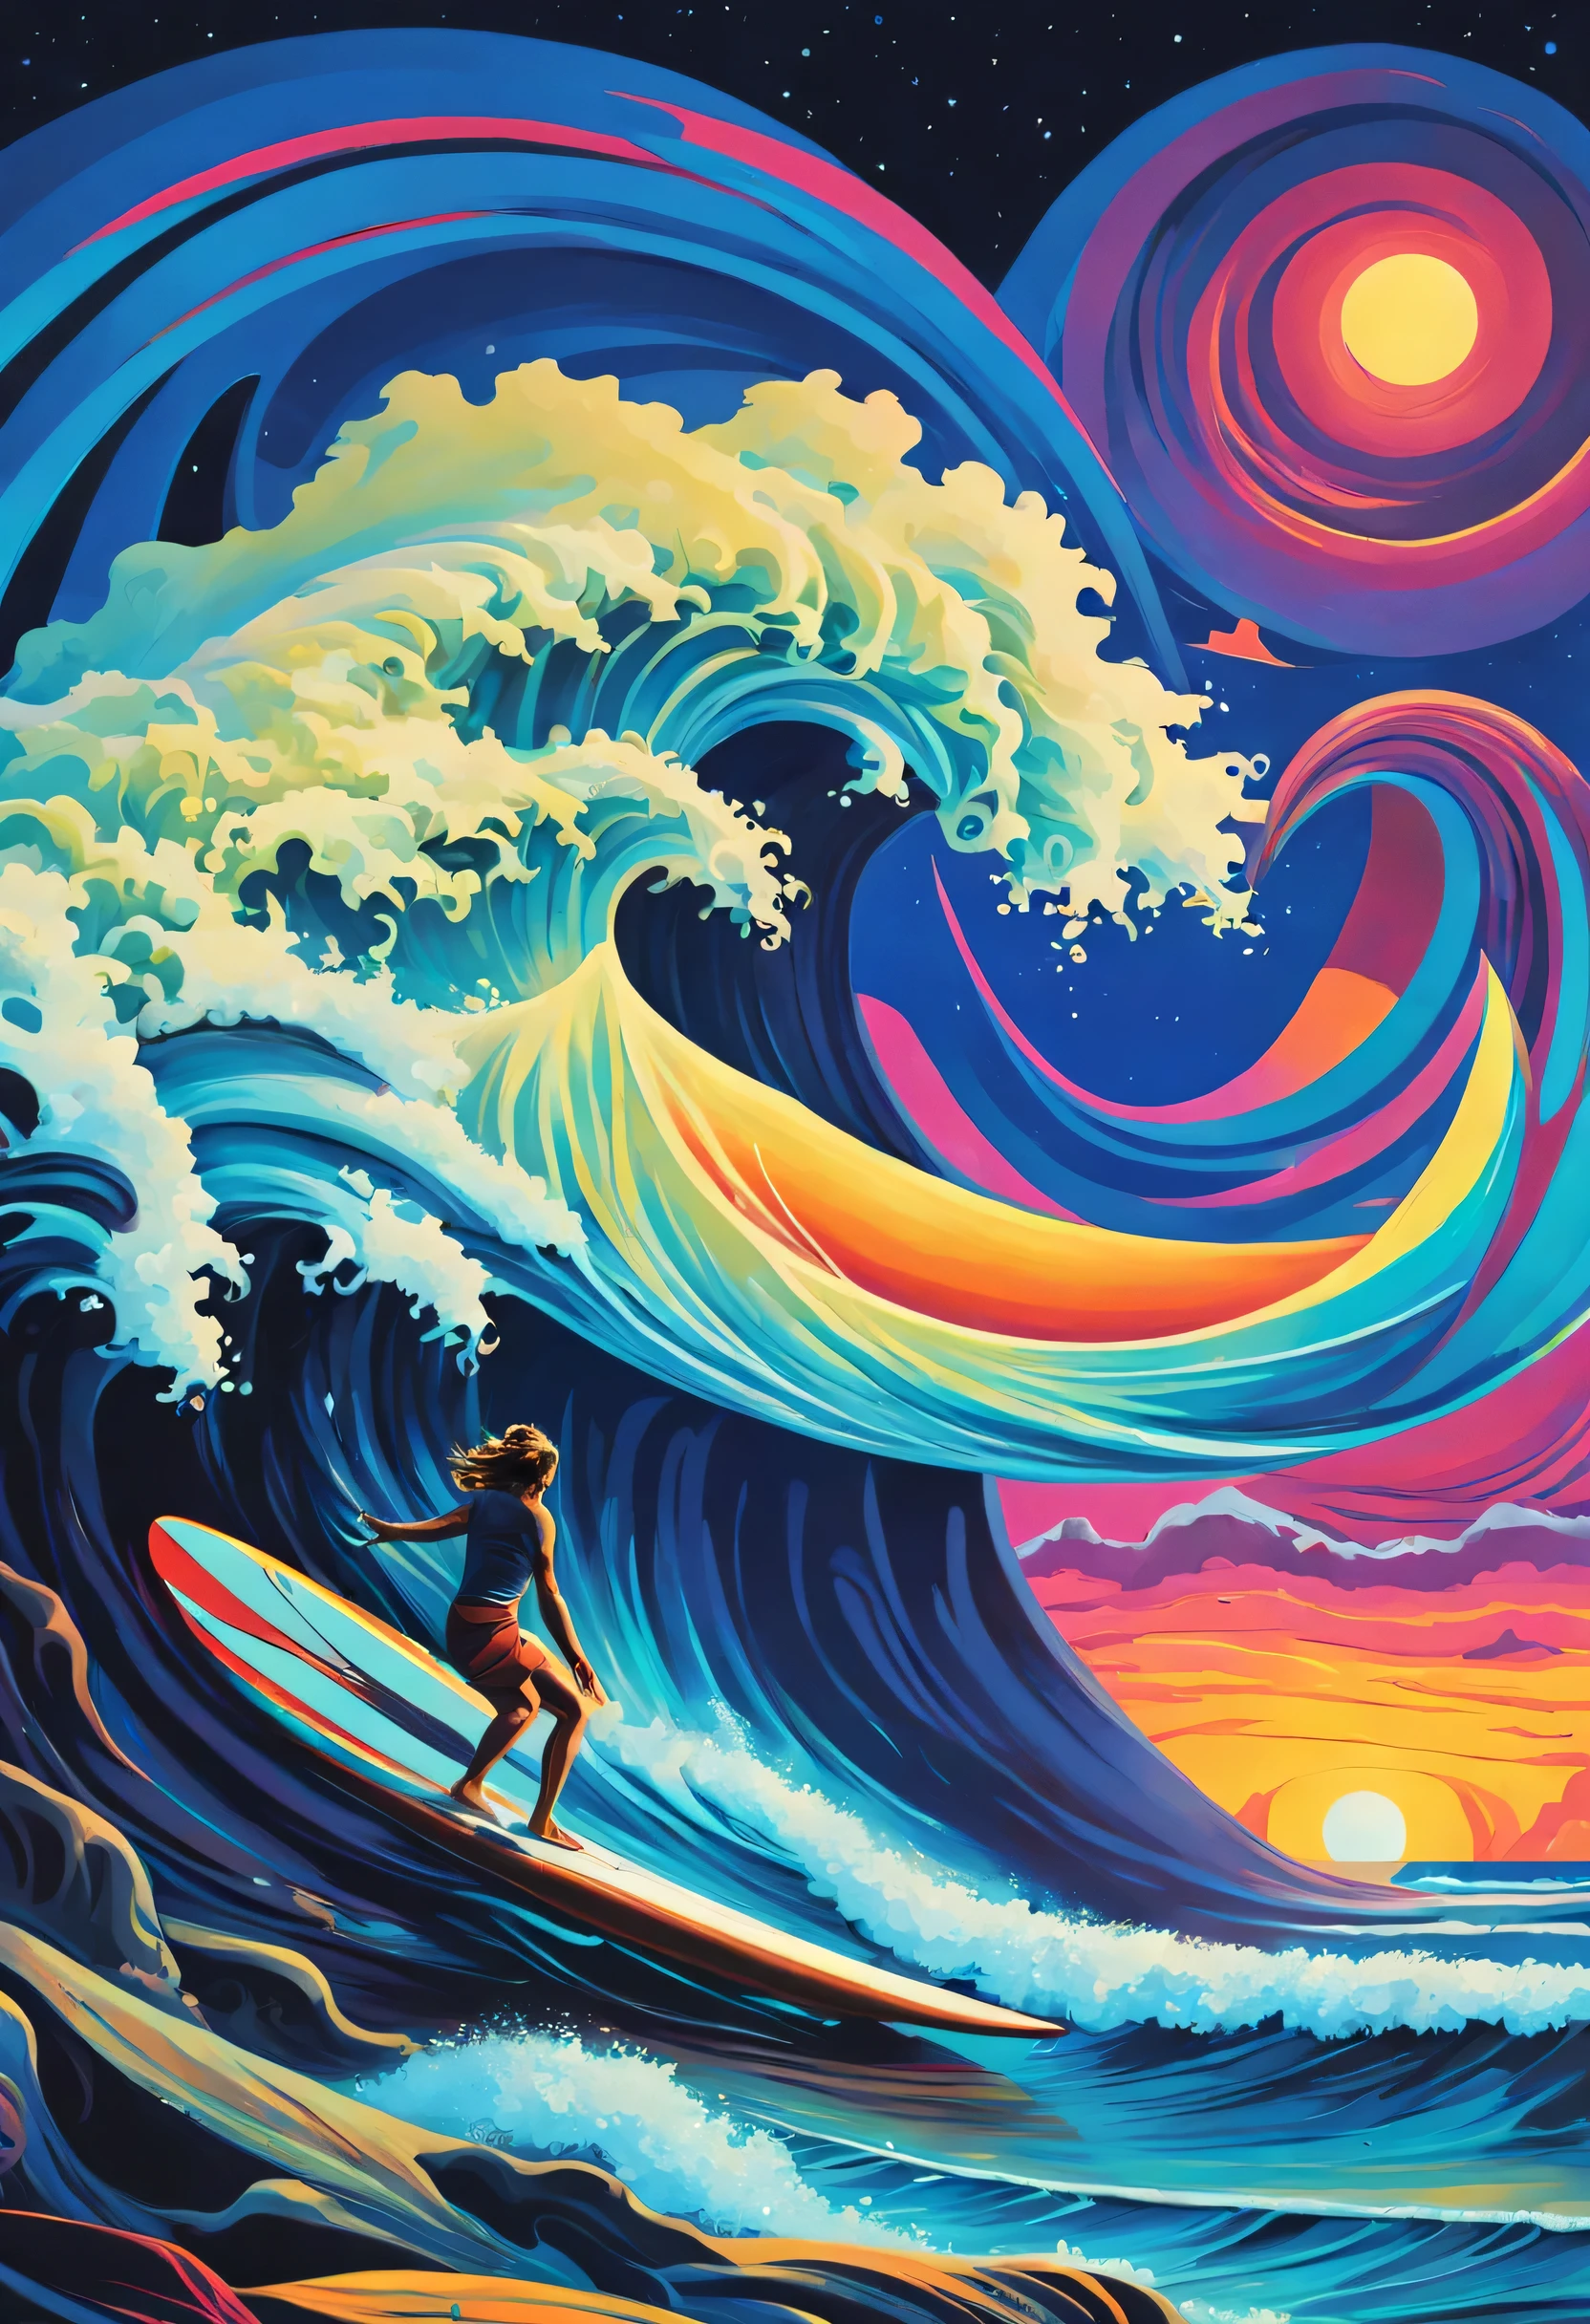 Créez une œuvre d&#39;art CGI surréaliste qui combine philosophie et surf dans un style extravagant et étrange.. Imaginez un paysage marin au crépuscule où les vagues se transforment en flotteurs., symboles arcaniques. Présente un surfeur naviguant dans les connaissances cosmiques au sommet d&#39;une planche en lévitation.. Infuser vif, Des couleurs surnaturelles avec une touche de surréalisme dans le style de Salvador Dalí.. Soyez concis, rend ça étrange, et assurer un mélange excentrique de philosophie et de surf qui transcende l&#39;ordinaire